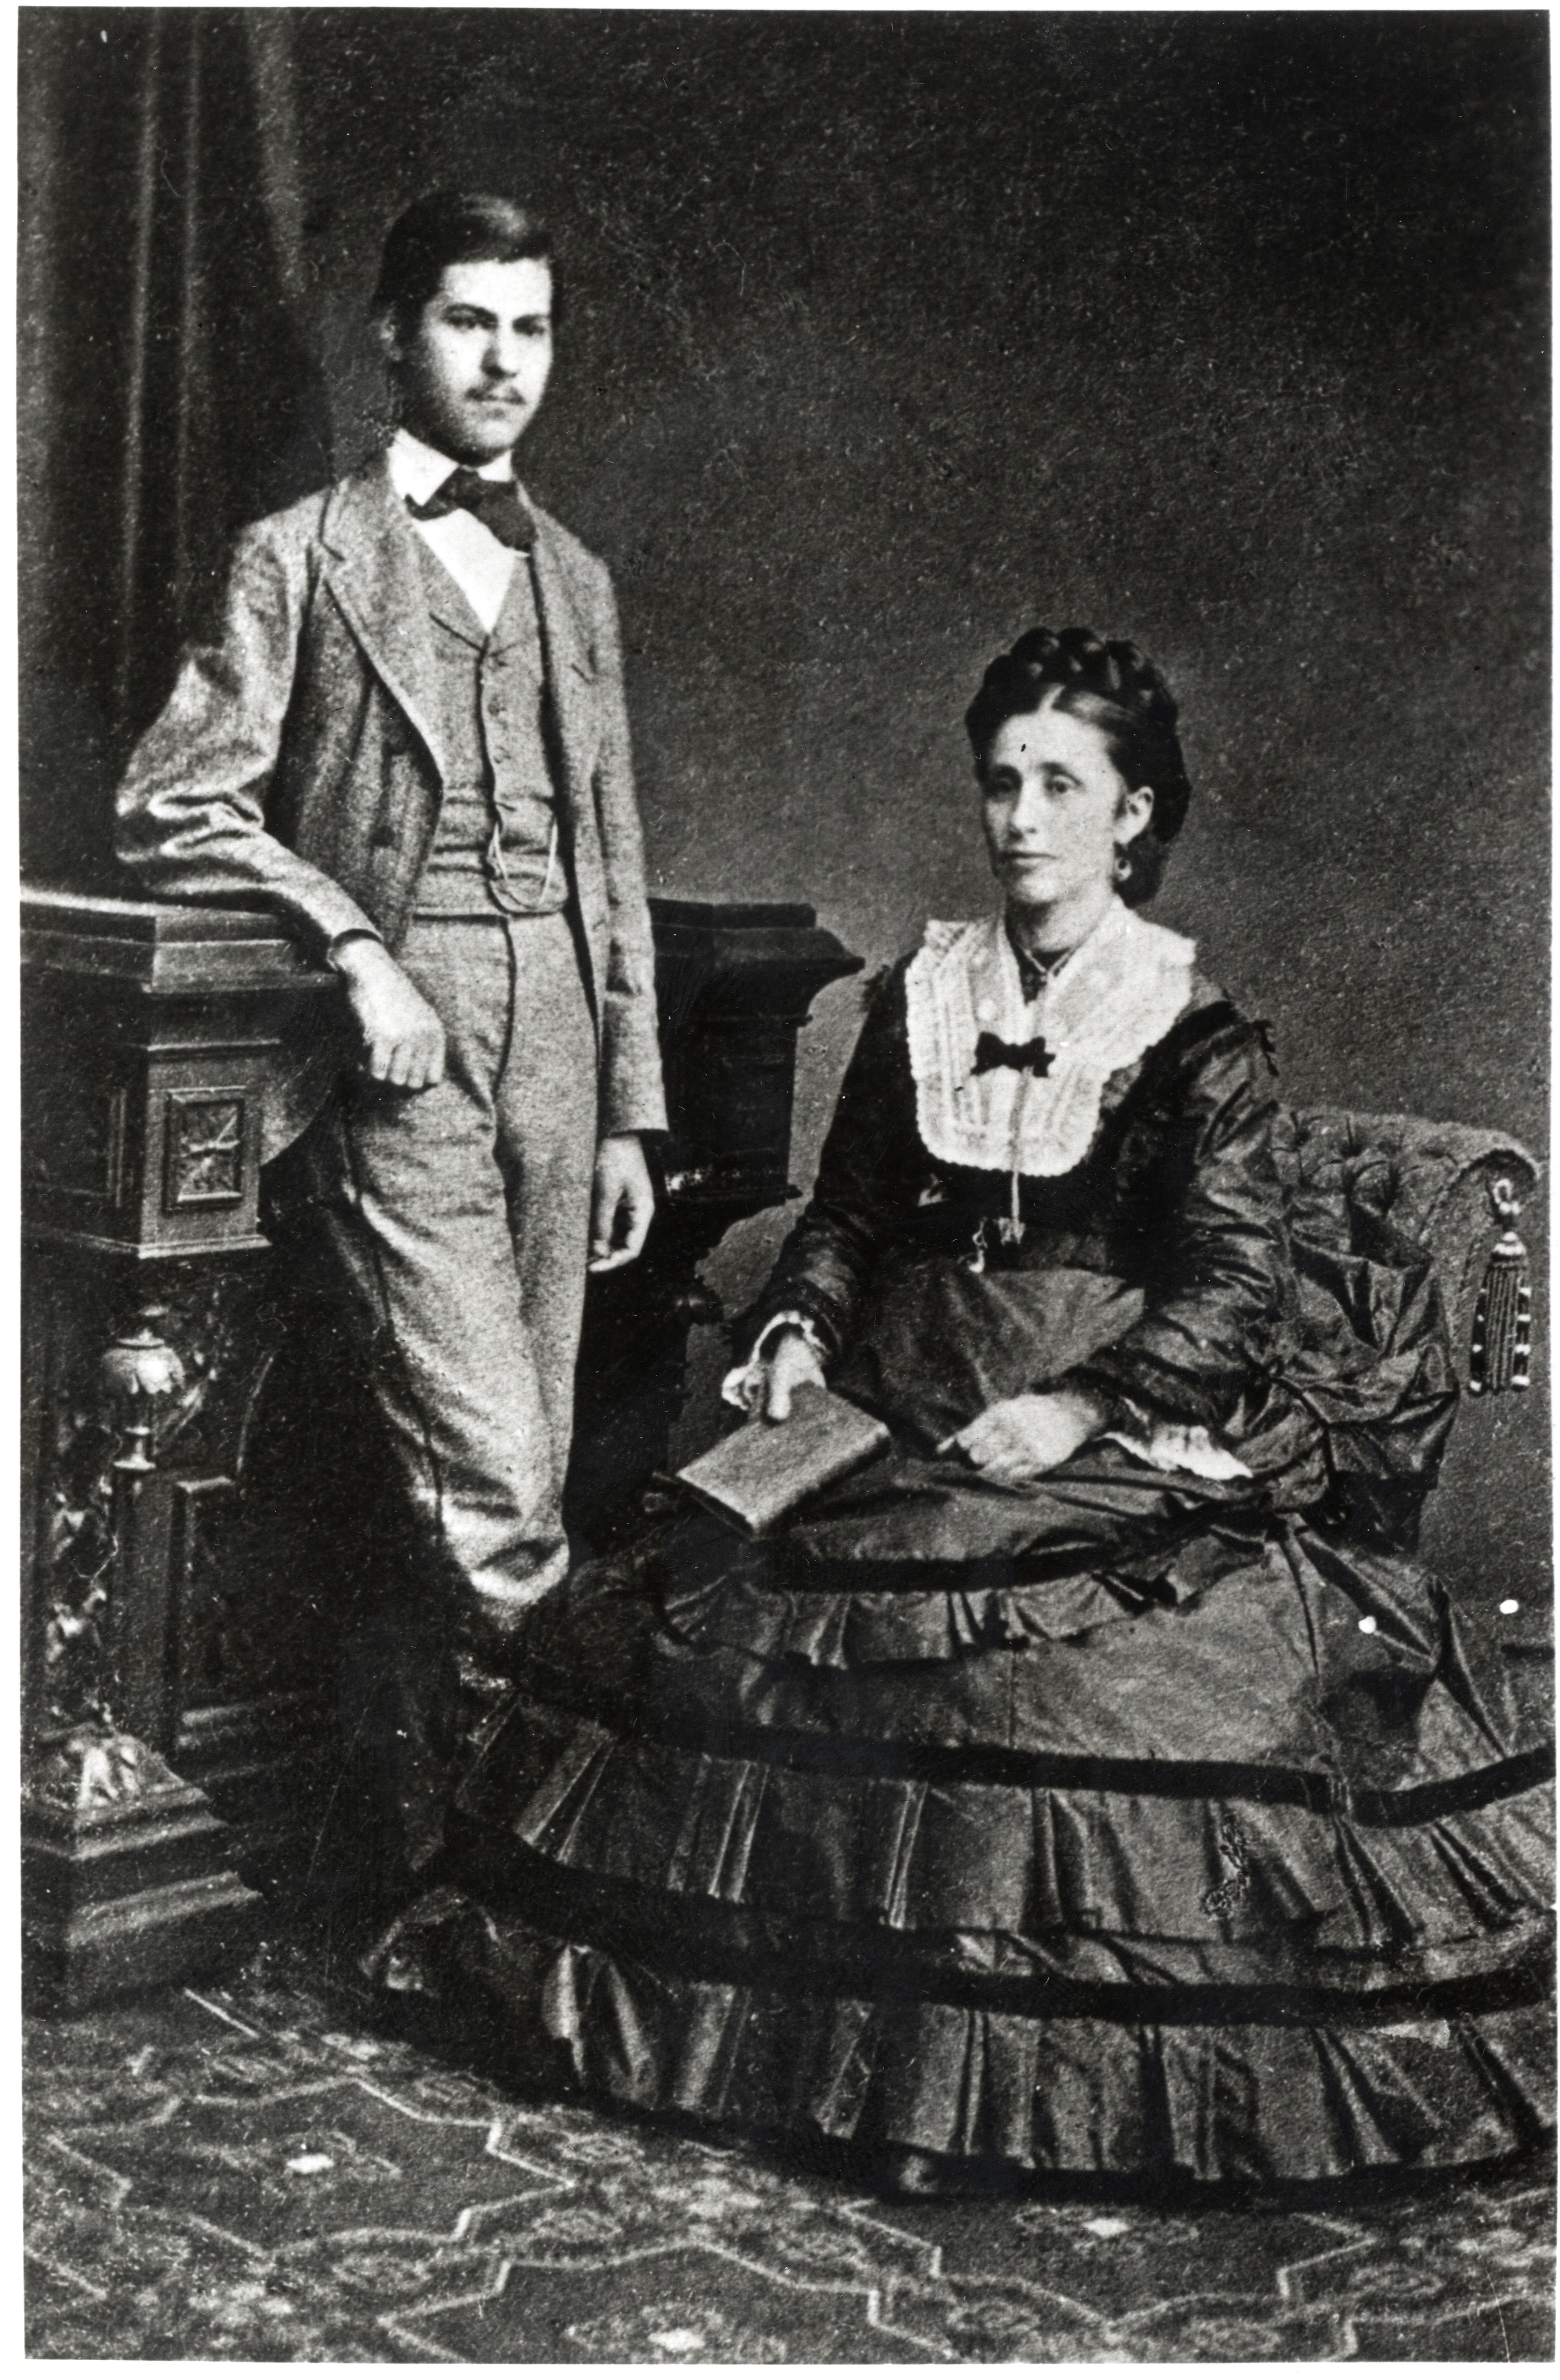 Sigmund Freud aged 16 years with his mother, Amalia Freud